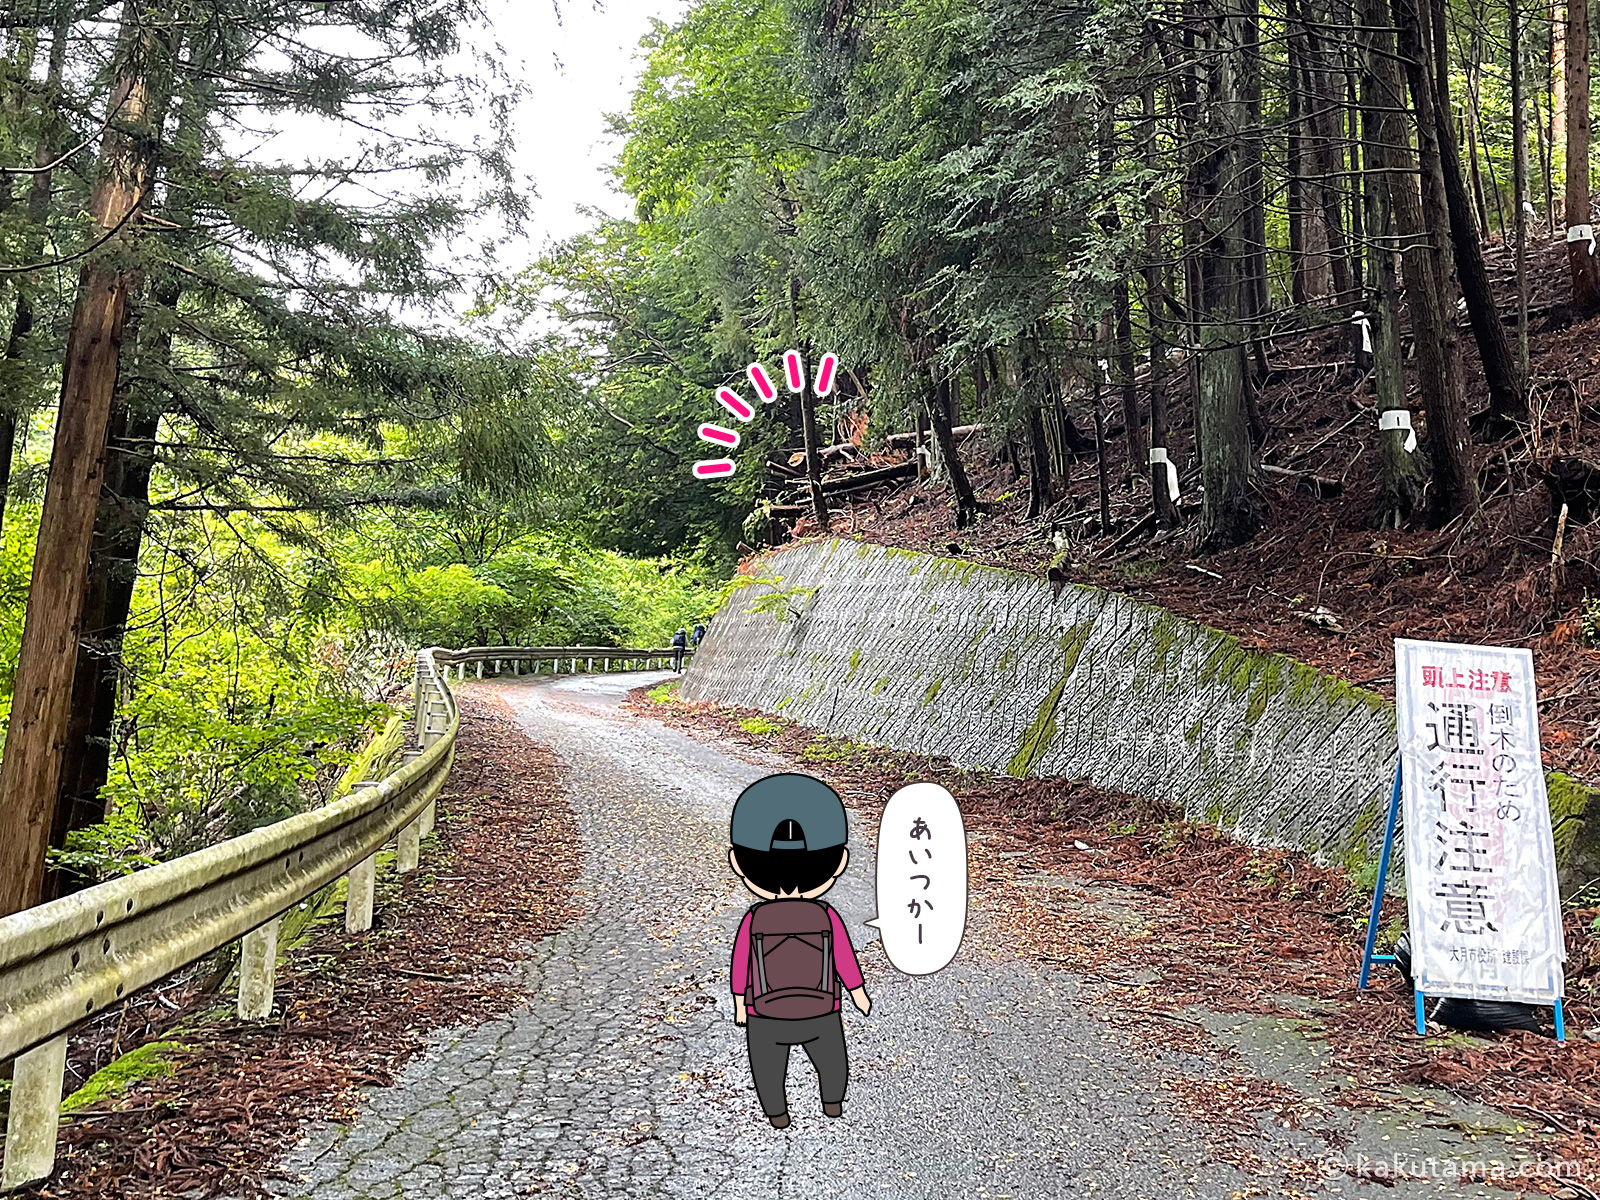 滝子山、スミ沢ルート方面へ向かって林道を進む写真と登山者のイラスト